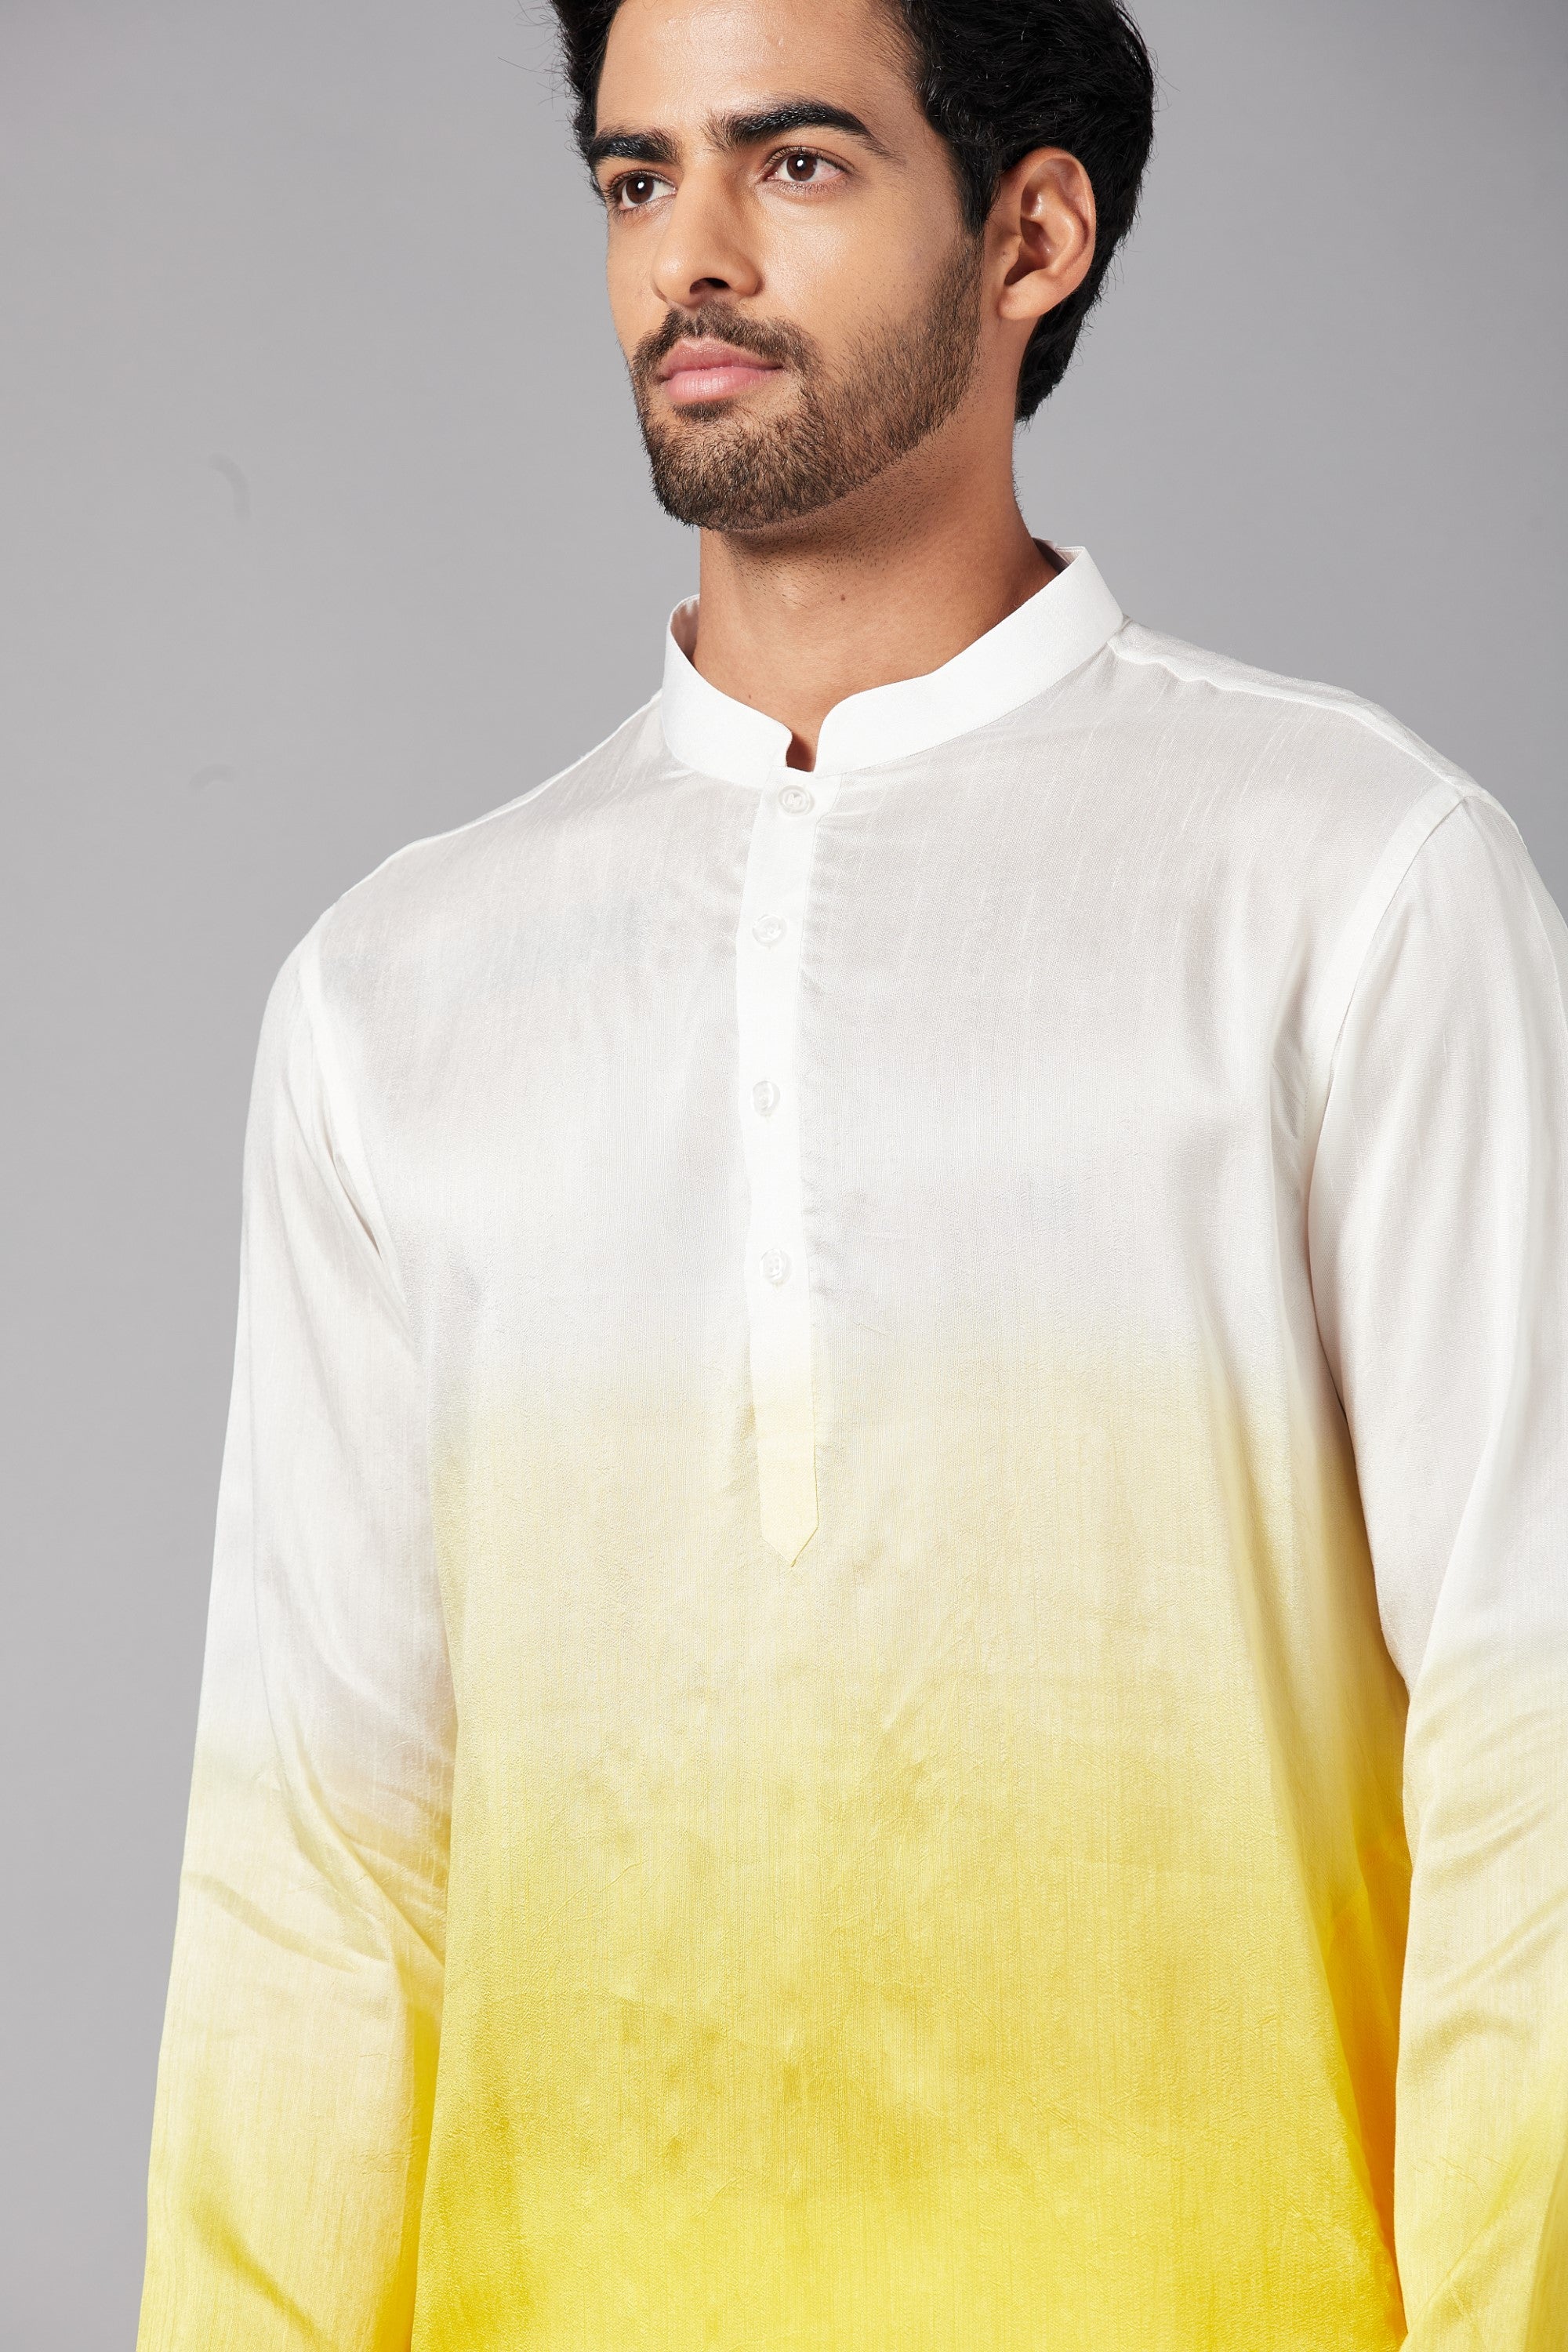 Men's White & Yellow Colorwhillombre Semi Raw Silk Mix - Hilo Design